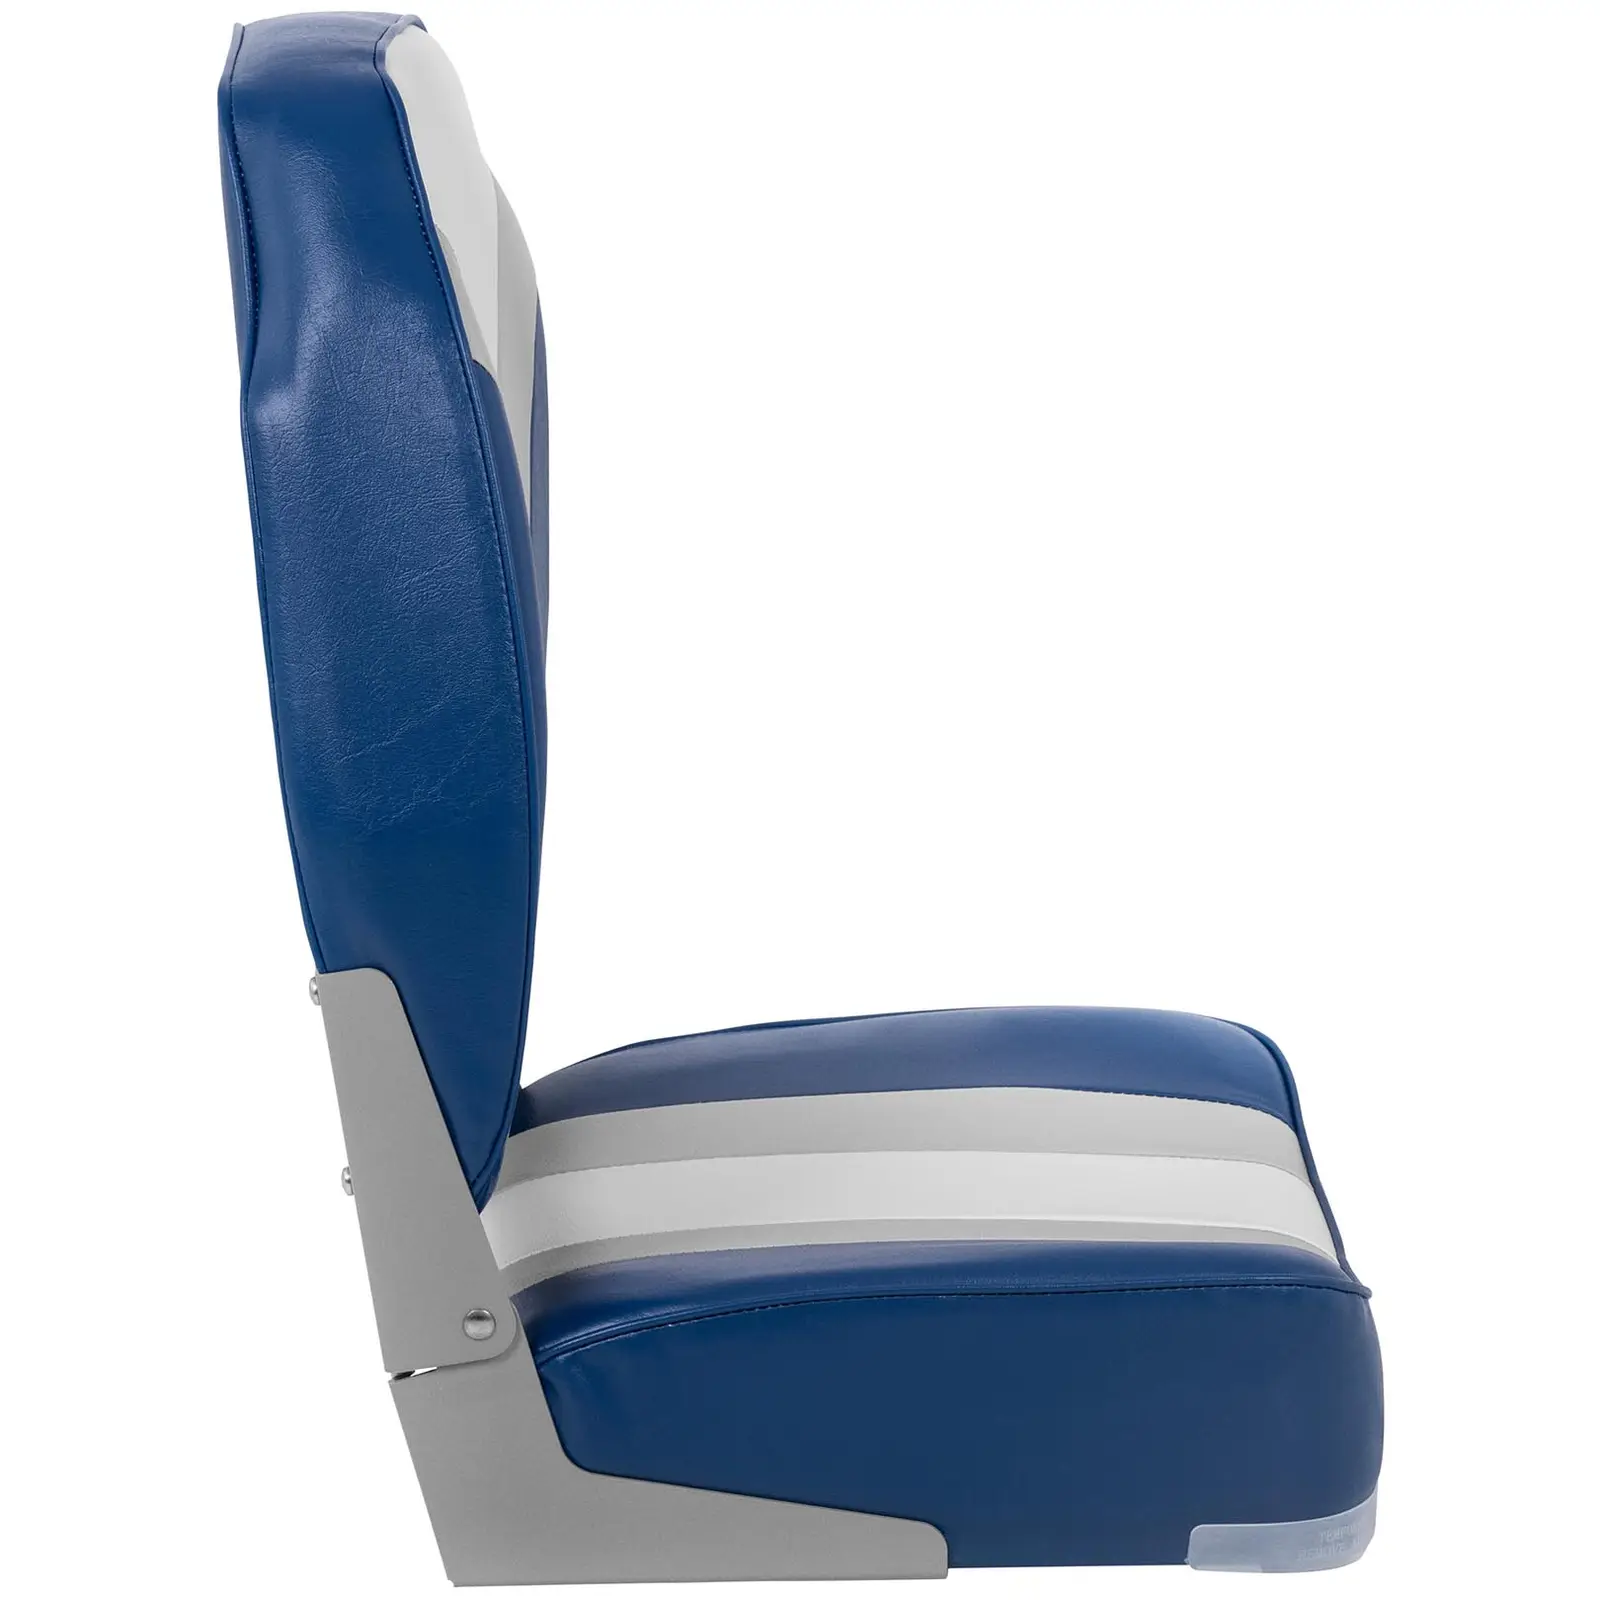 Fotel do łodzi - 36x43x60 cm - biały, niebieski, szary